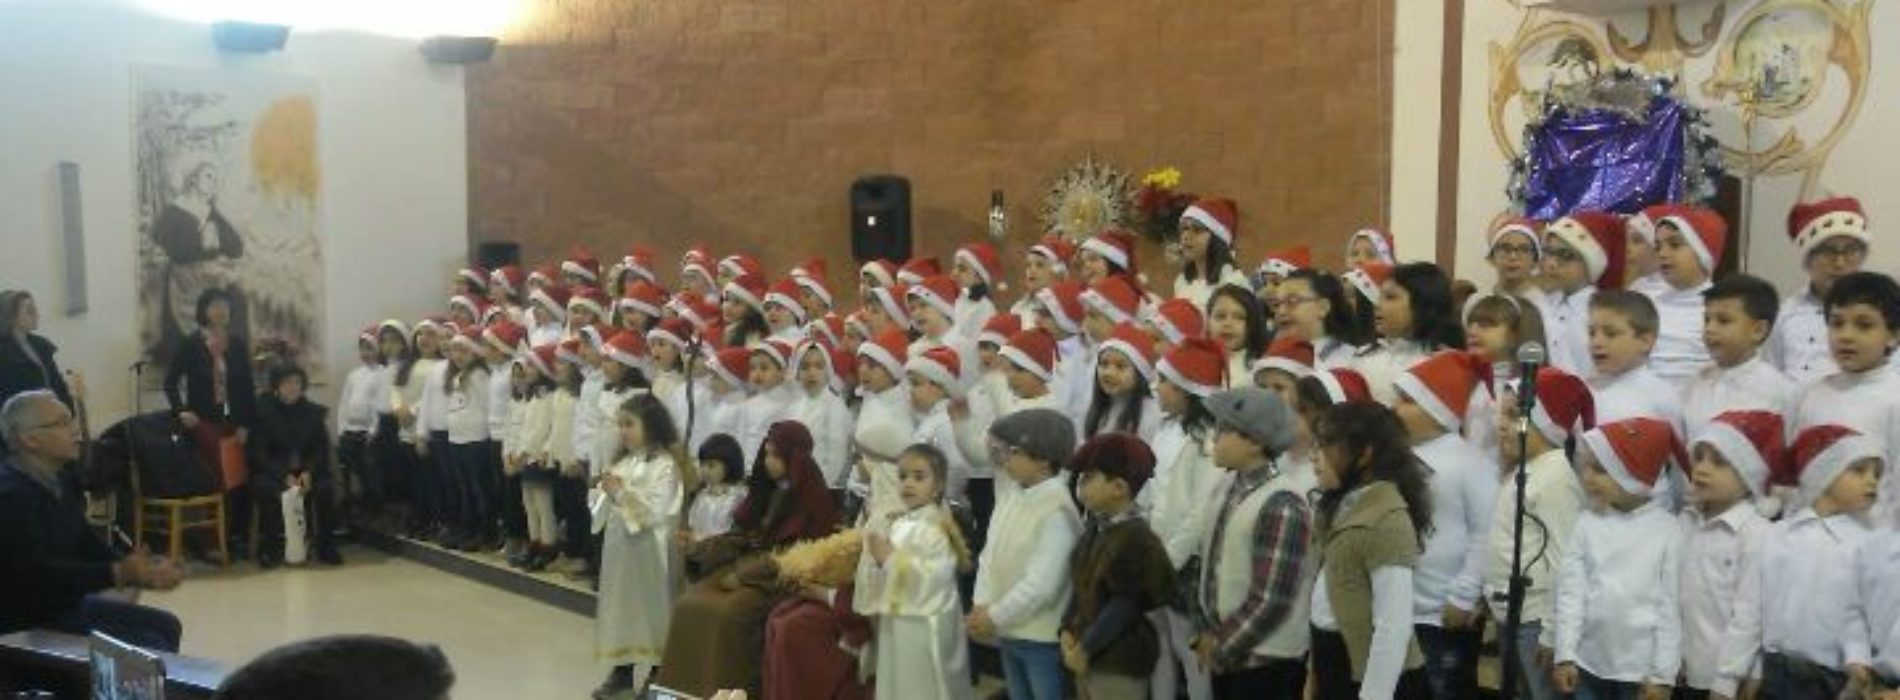 Gli alunni del plesso “Gino Novelli” hanno animato il “Natale insieme” tra canti tradizionali e gesti di solidarietà